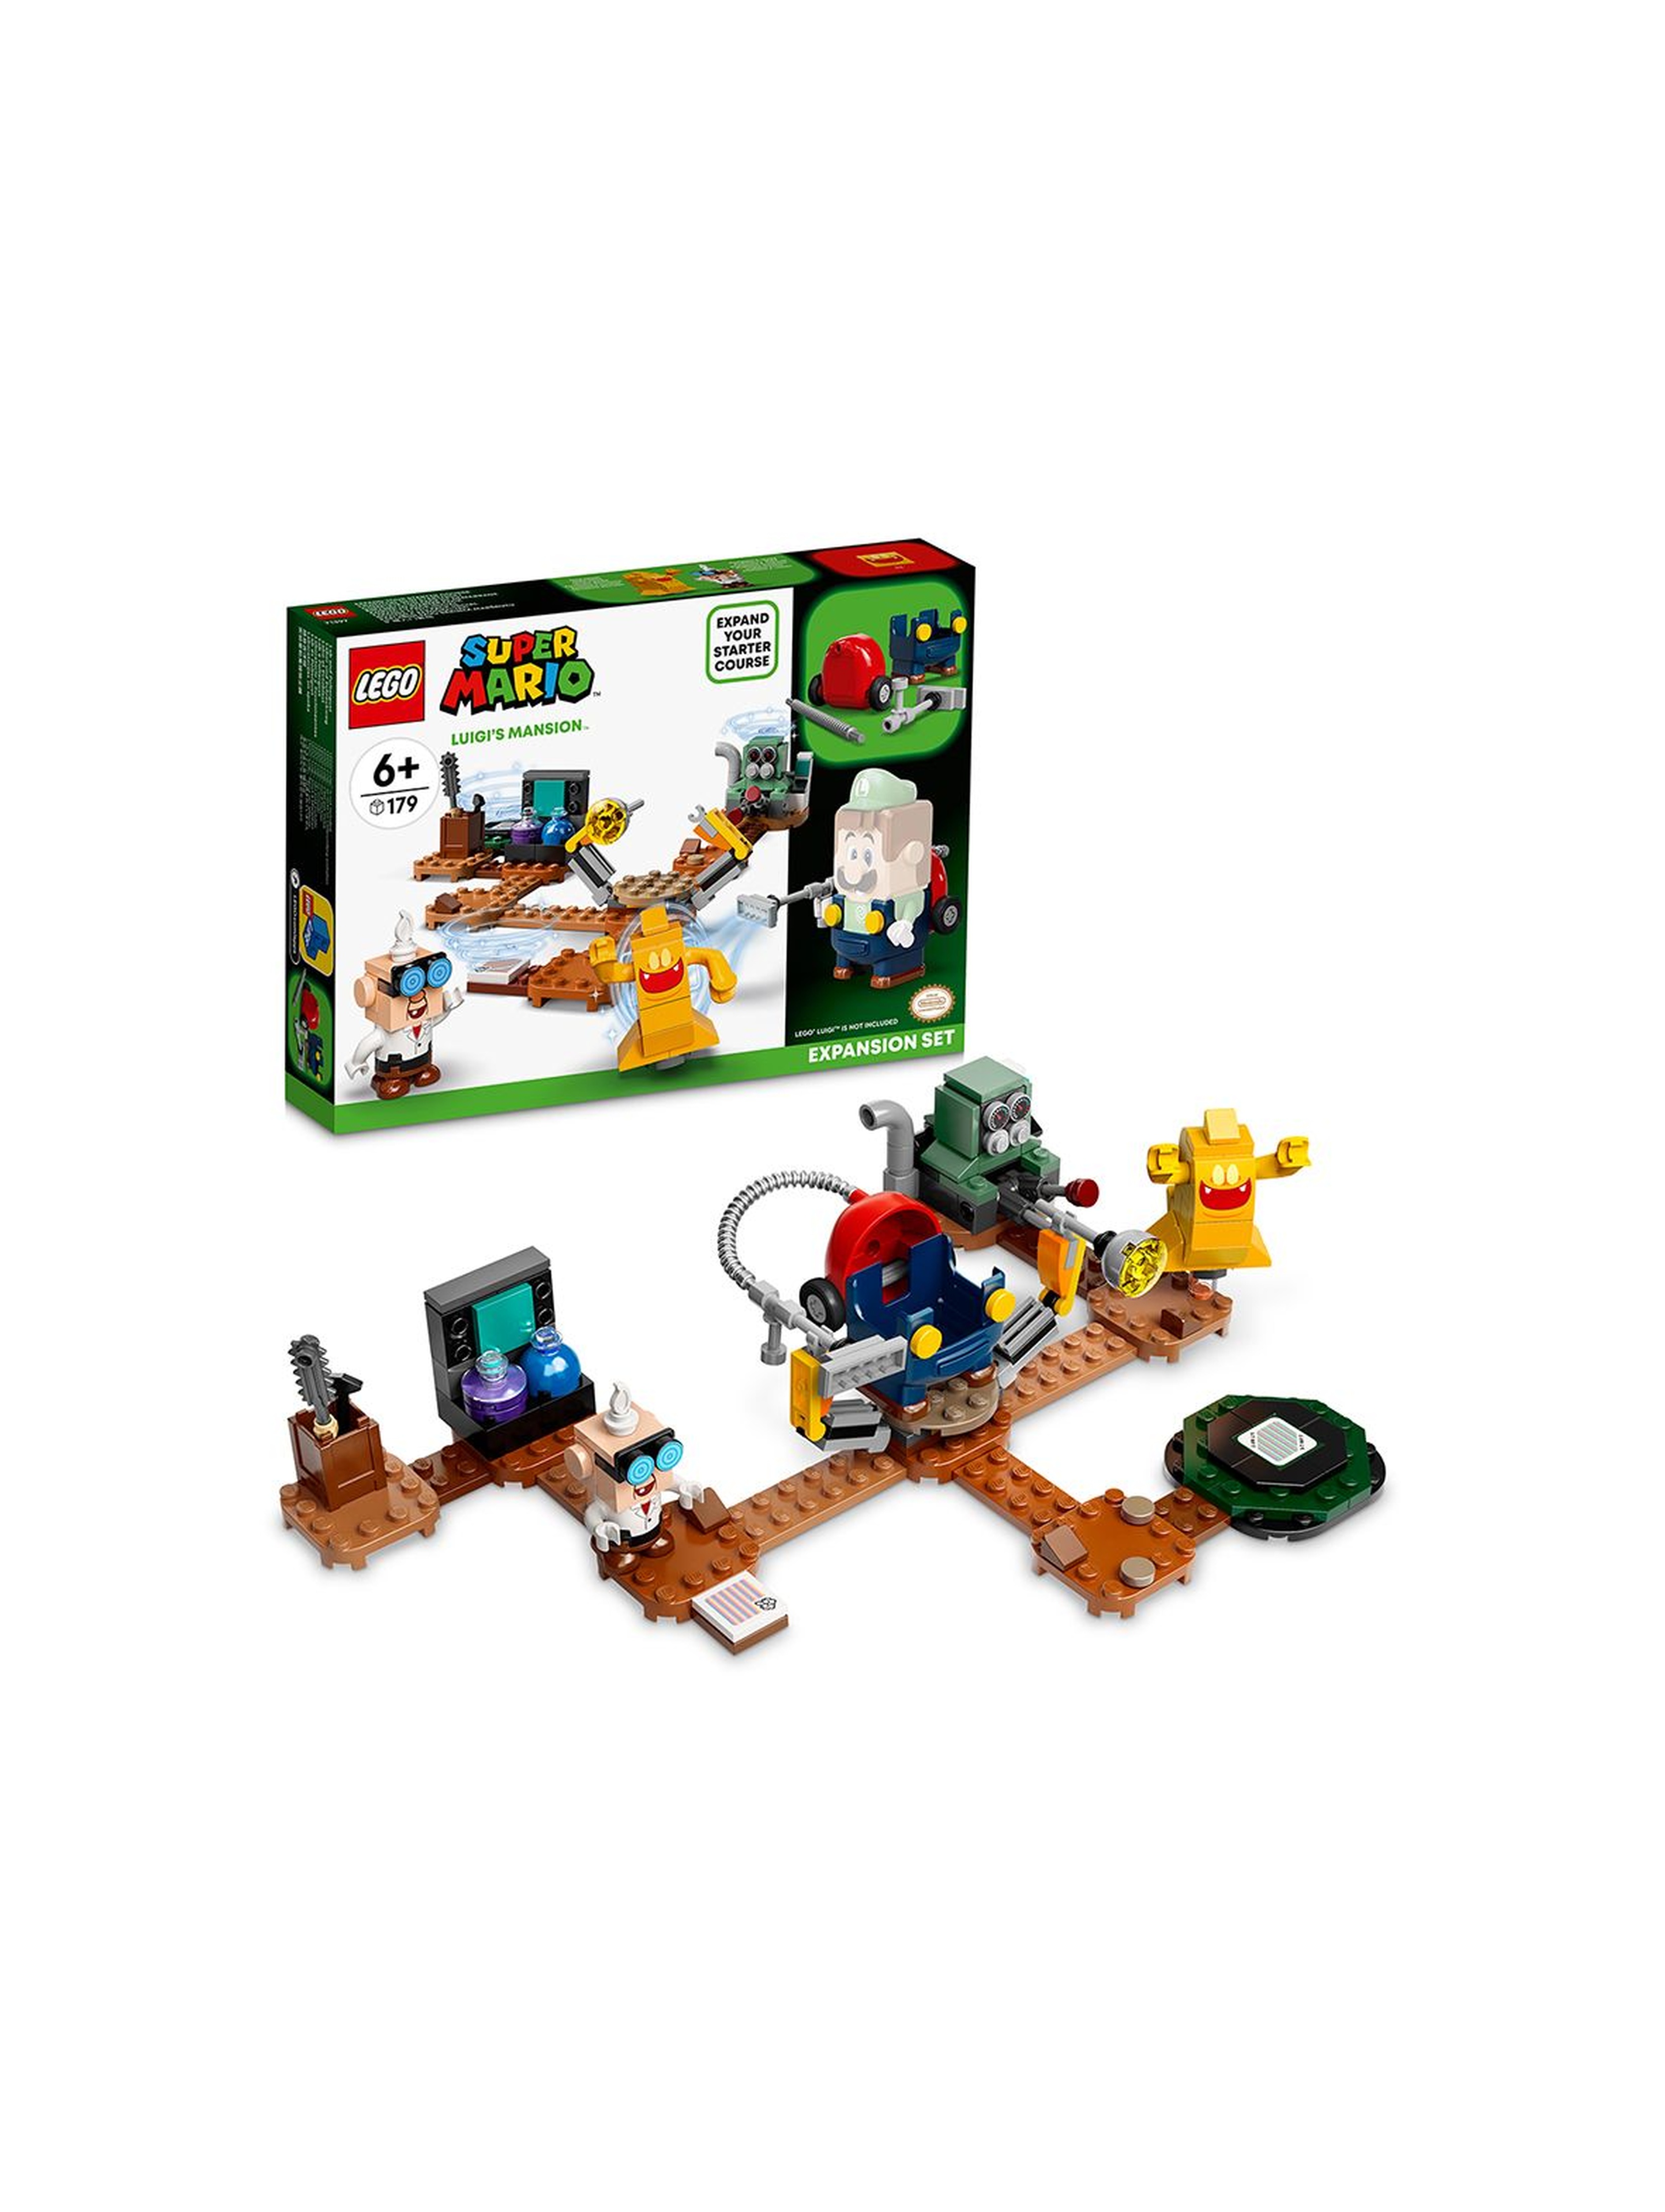 LEGO Super Mario 71397 Laboratorium w rezydencji Luigiego i Poltergust - zestaw rozszerzający